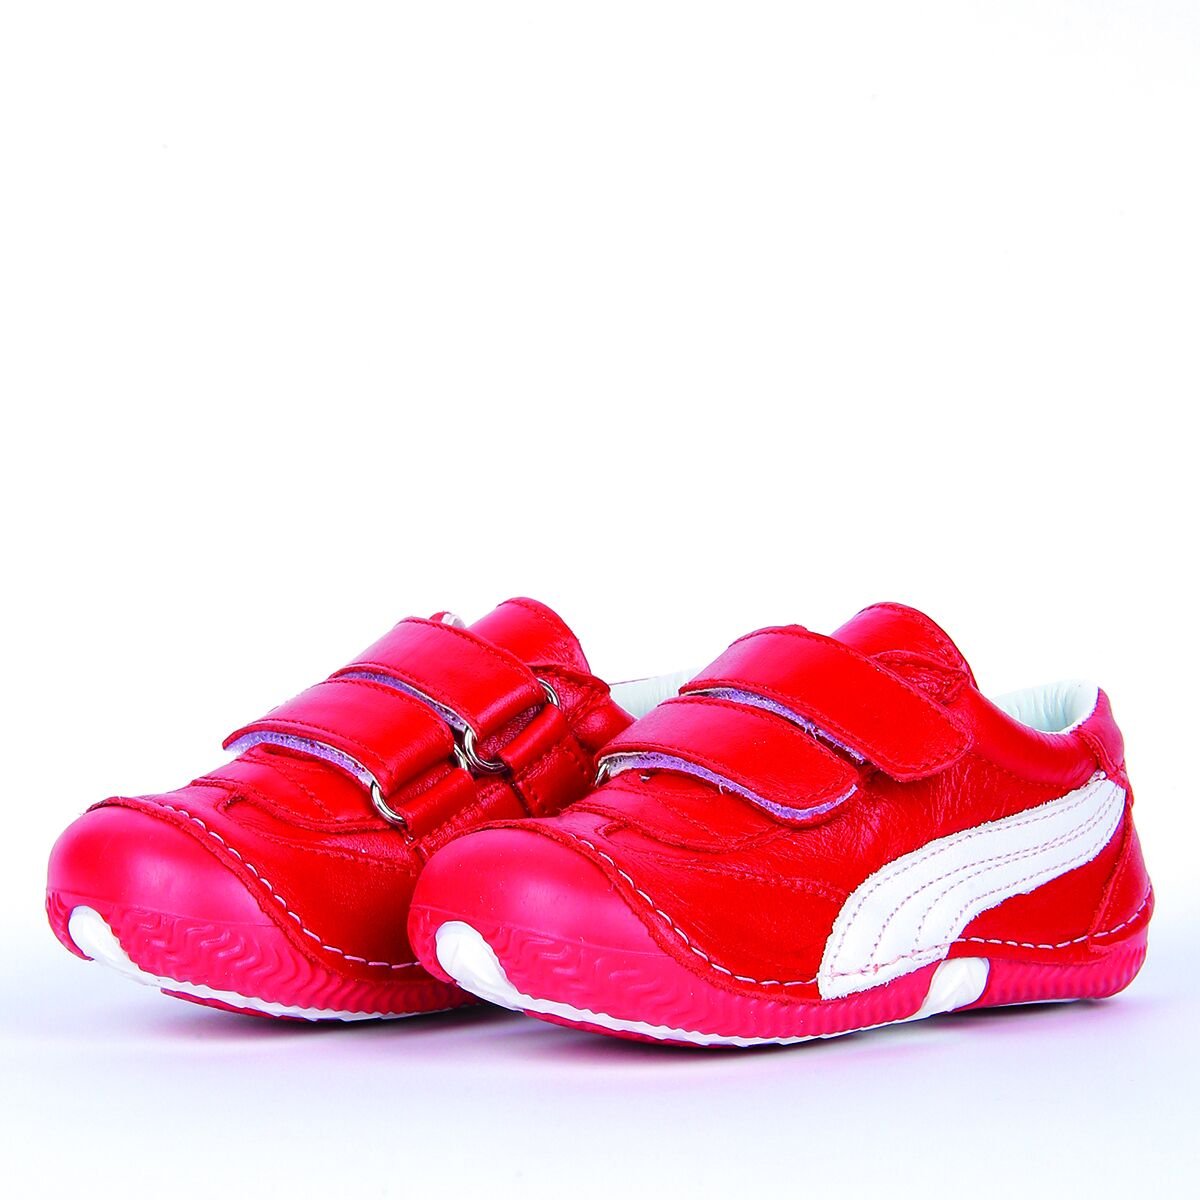 Hakiki Deri Ortopedik İlk Adım Bebek Ayakkabısı Kırmızı